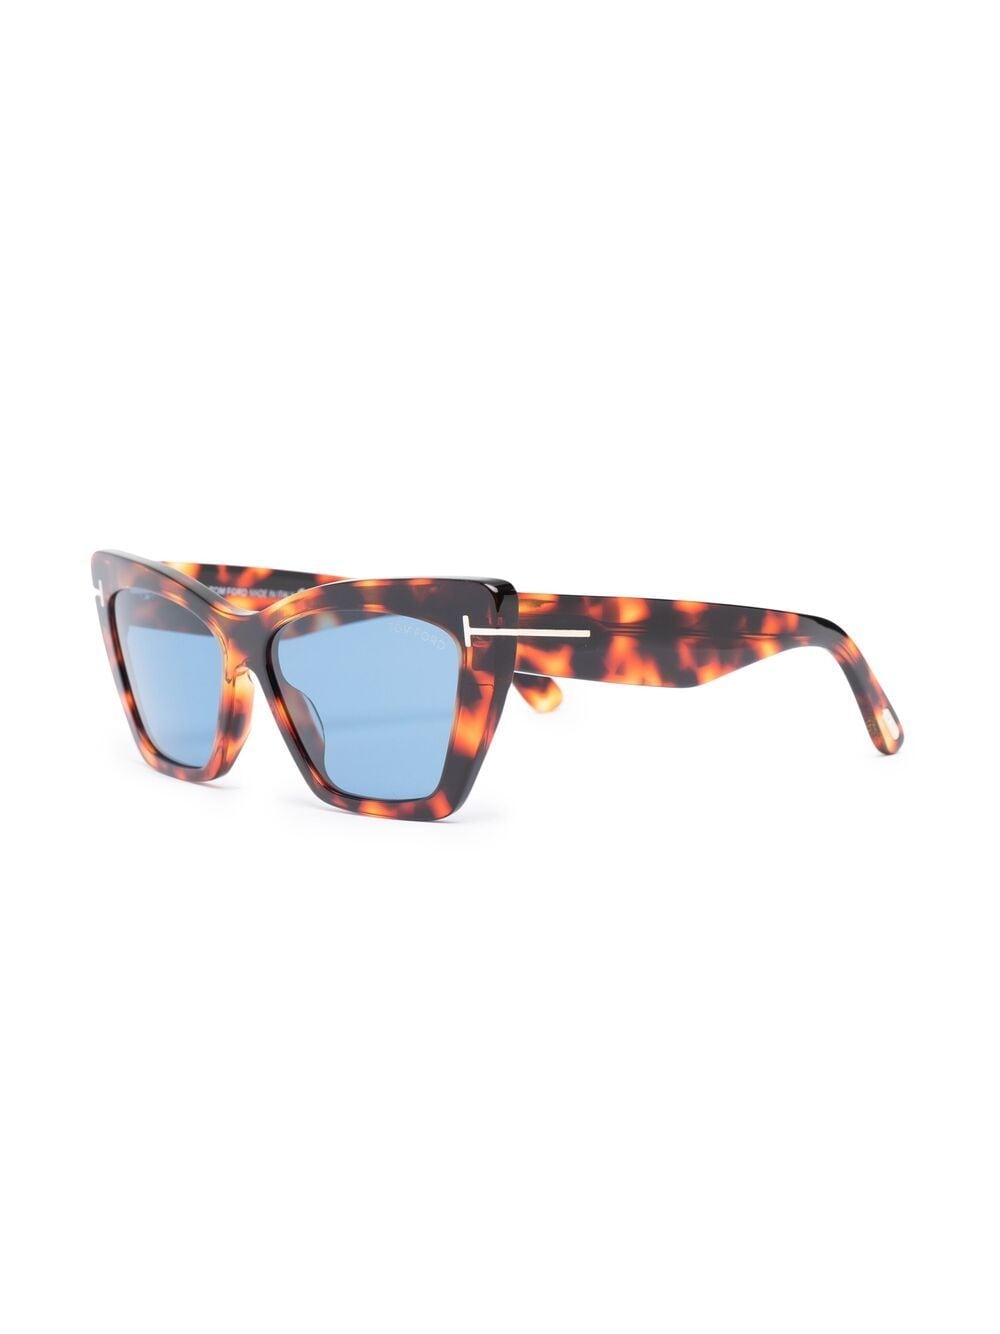 TOM FORD Eyewear Whyatt zonnebril met vlinder montuur - Bruin